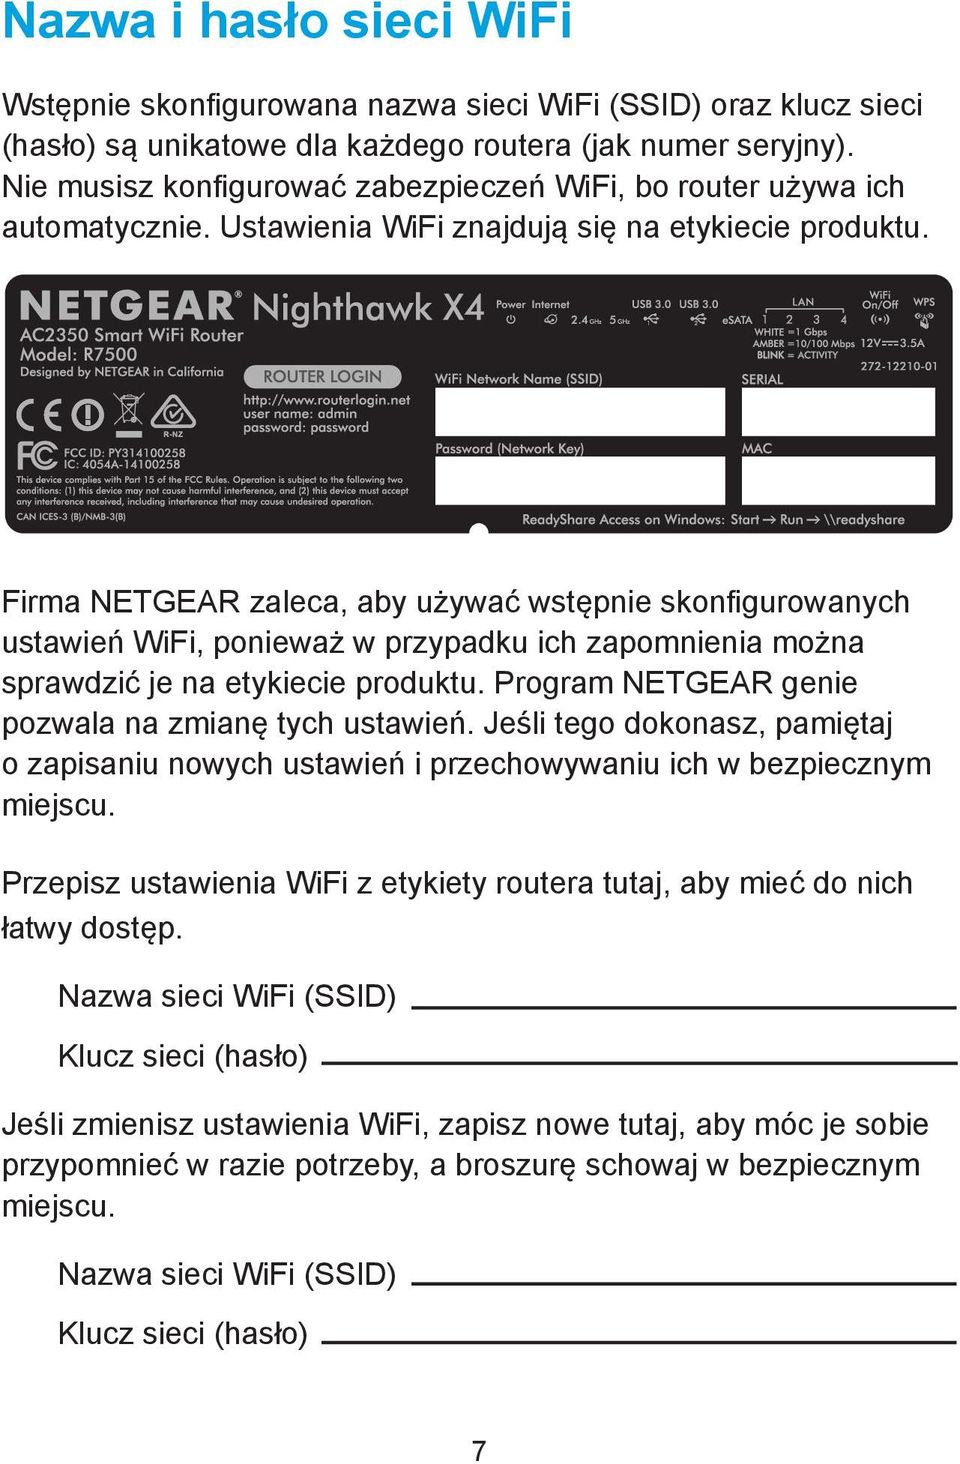 Firma NETGEAR zaleca, aby używać wstępnie skonfigurowanych ustawień WiFi, ponieważ w przypadku ich zapomnienia można sprawdzić je na etykiecie produktu.